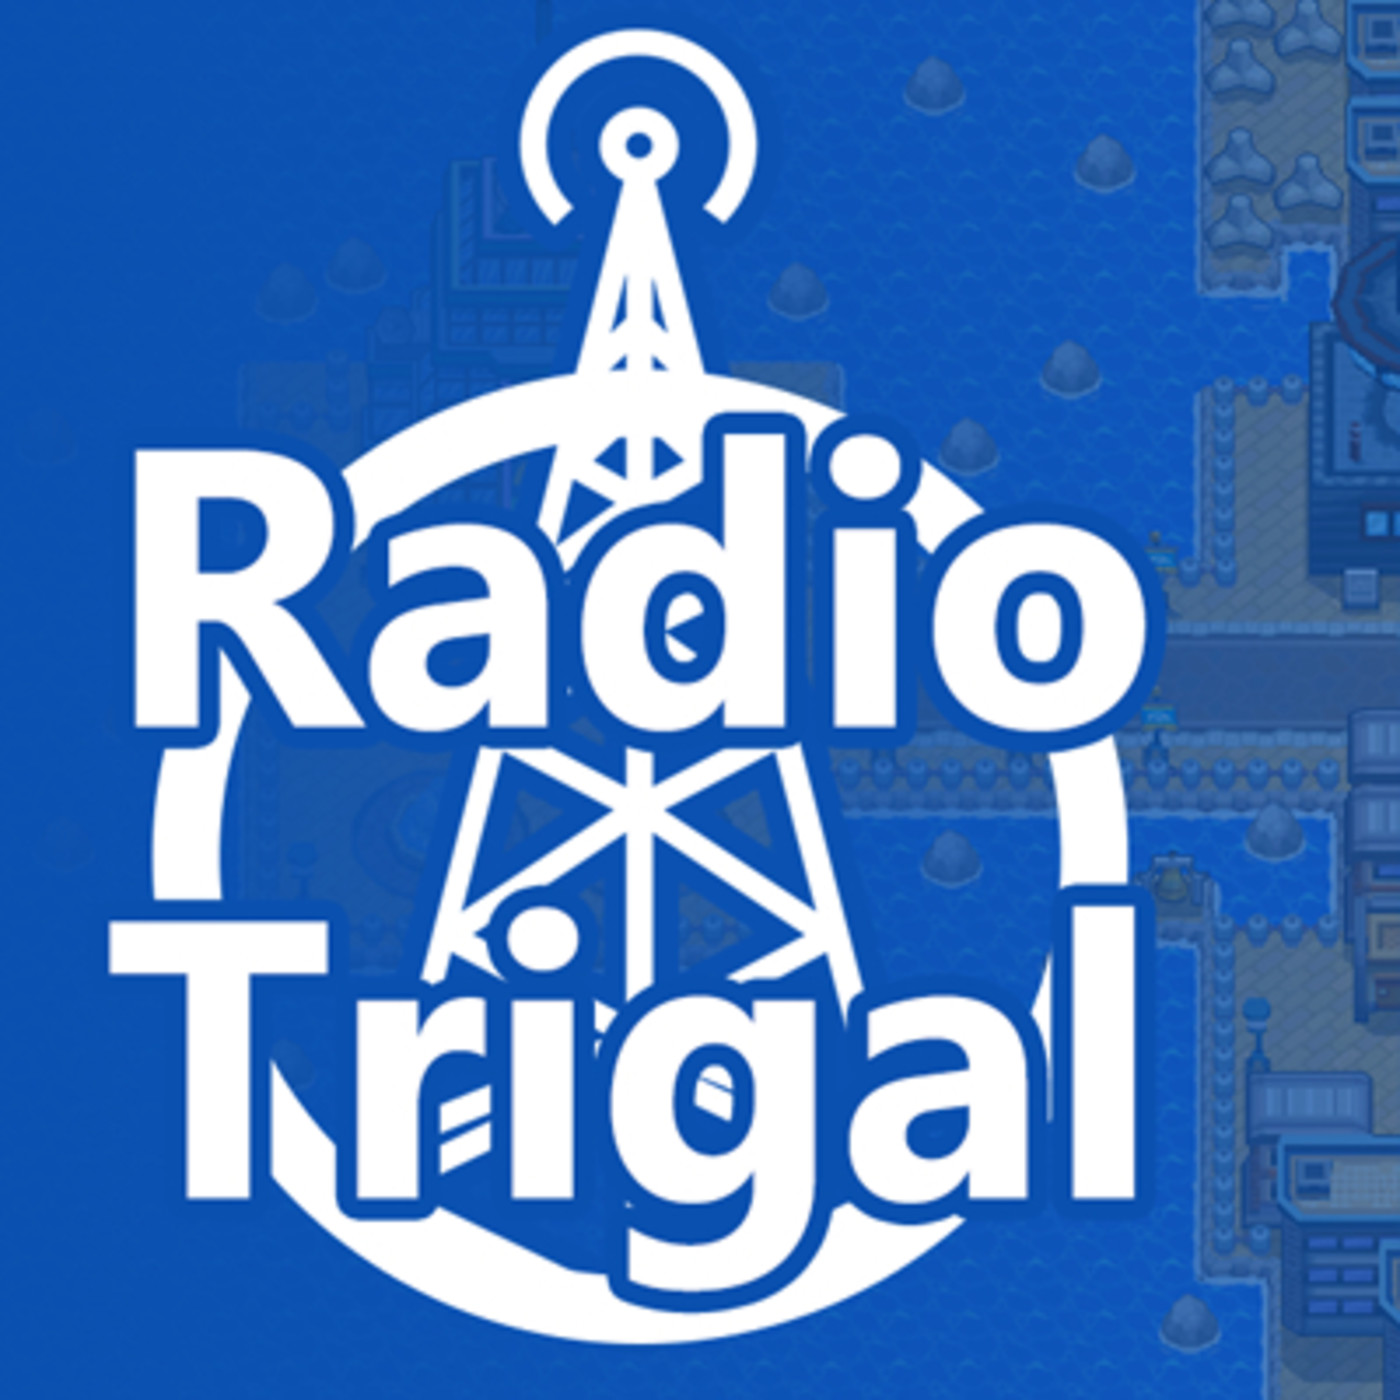 Radio Trigal